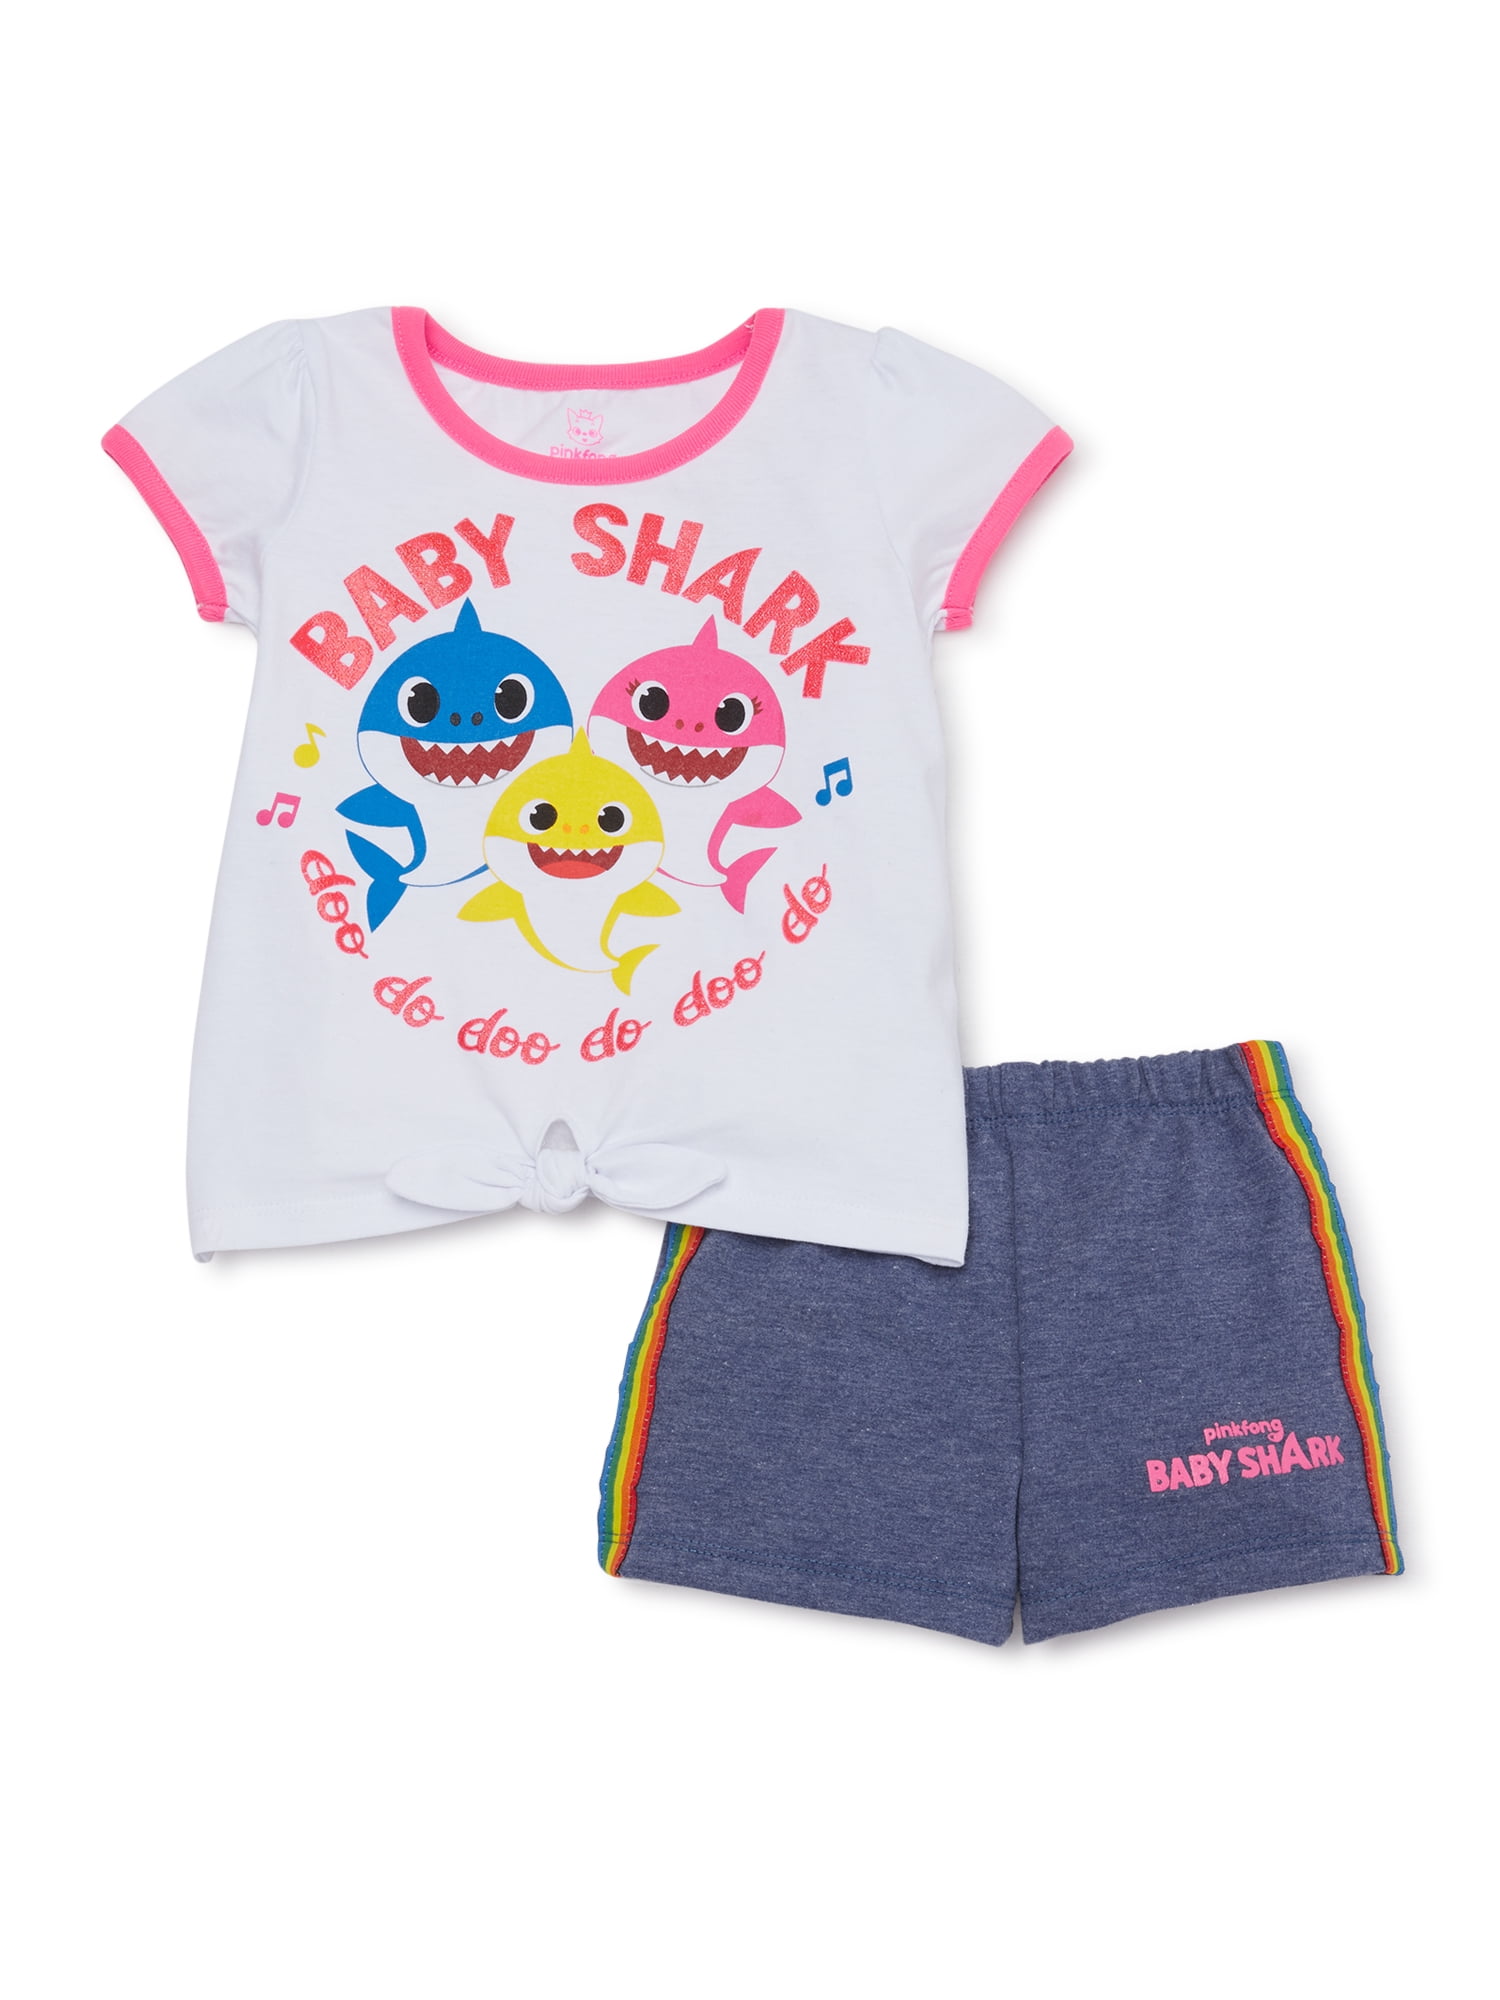 Baby Shark Toddler Girls T-Shirt & Shorts, 2-Piece Outfit Set - Walmart.com